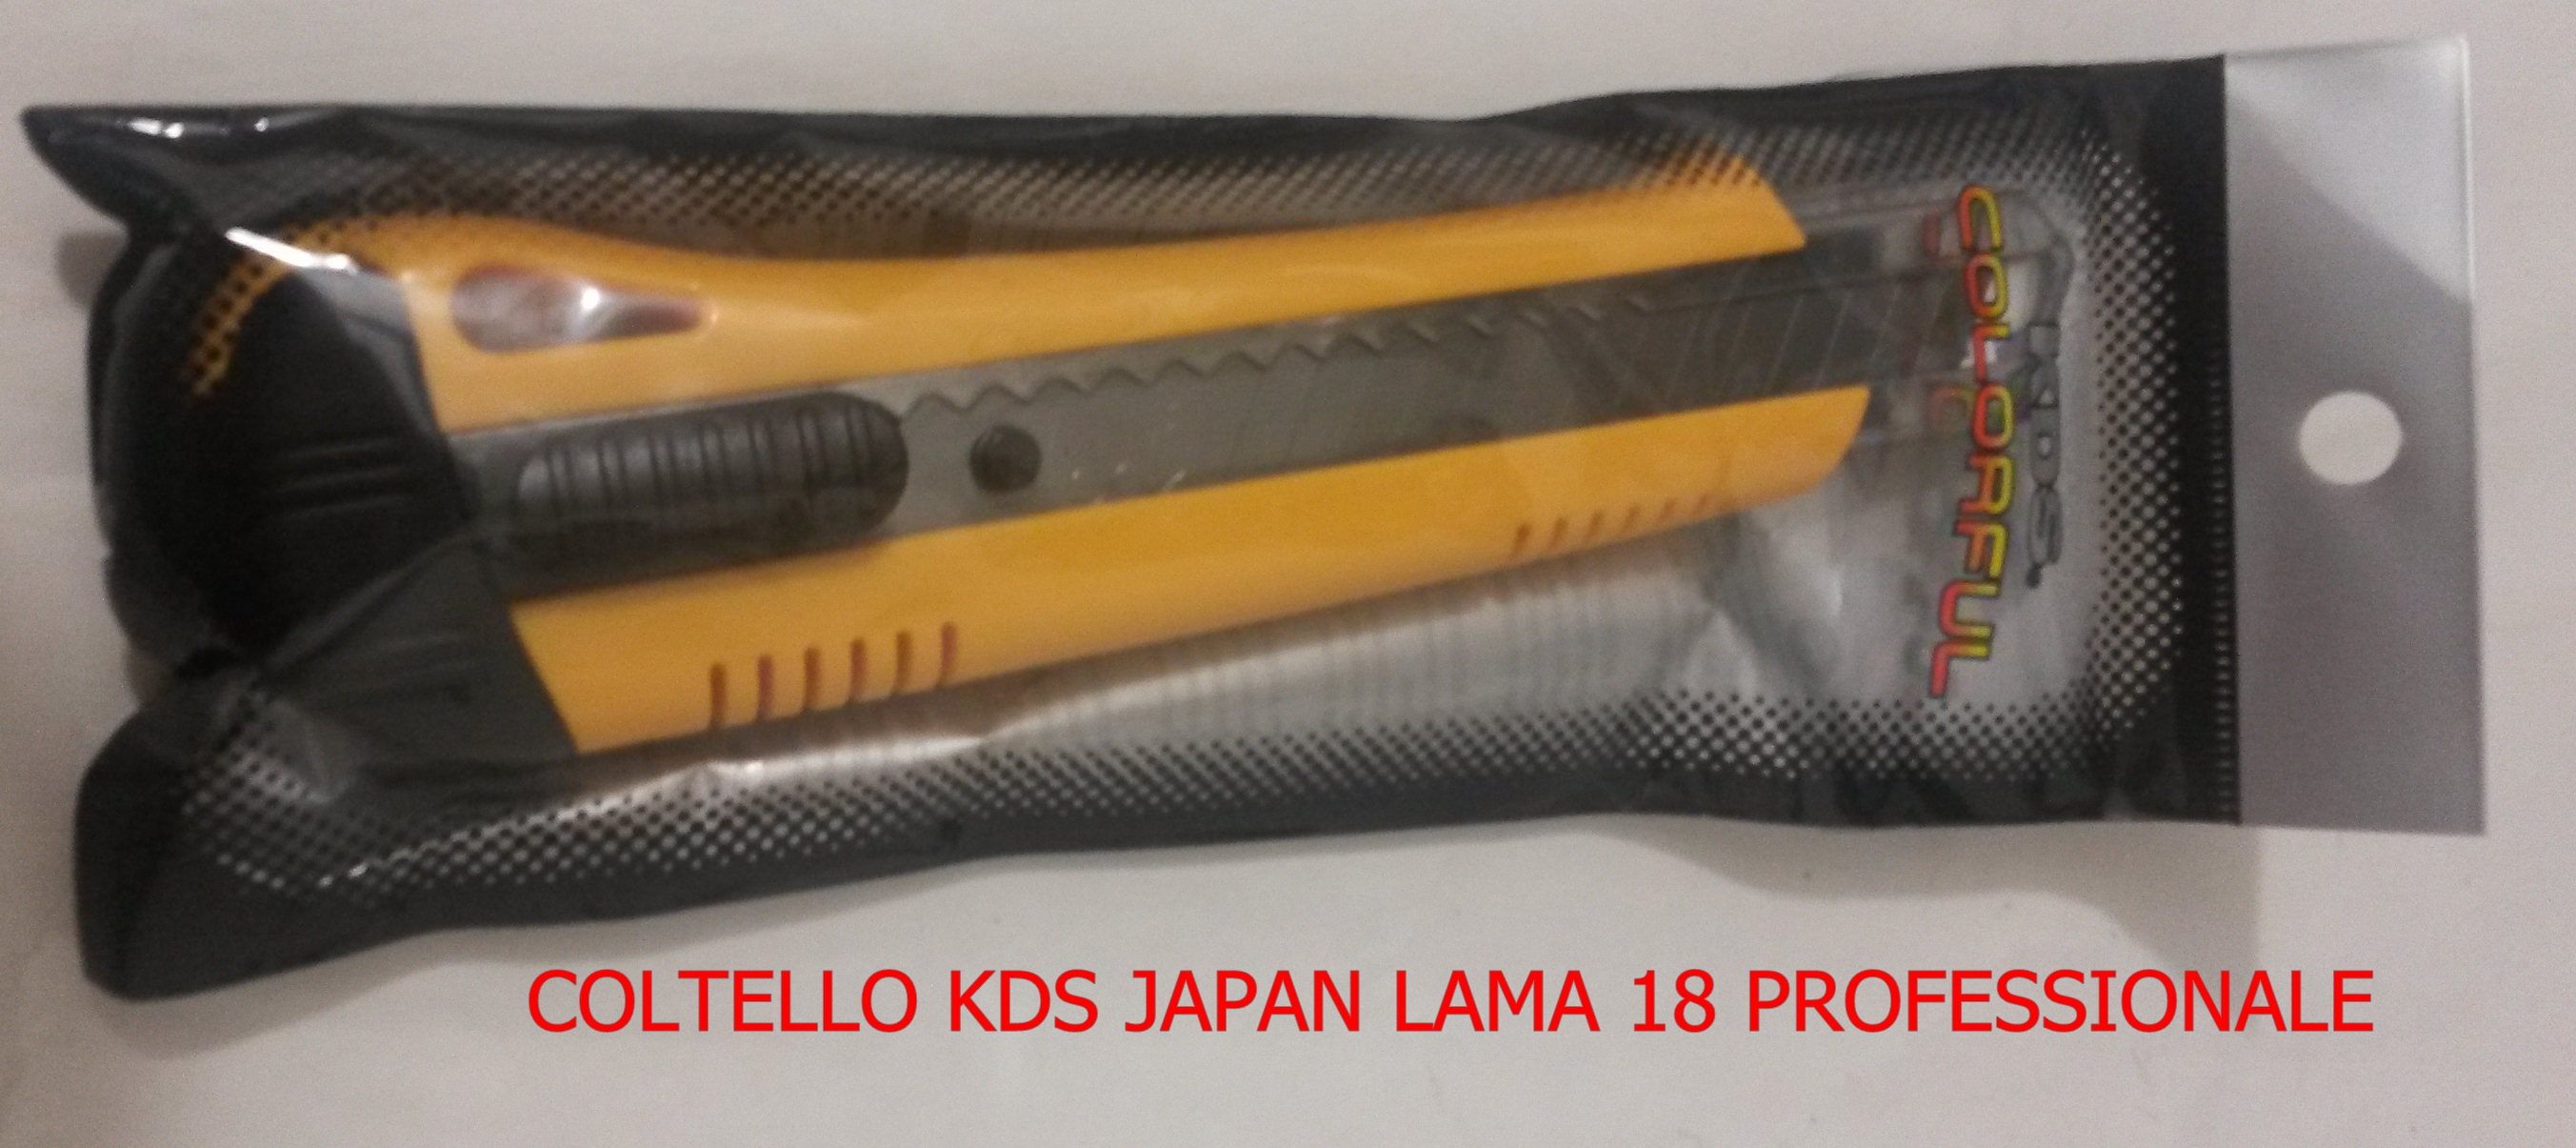 COLTELLO KDS JAPAN LAMA 18